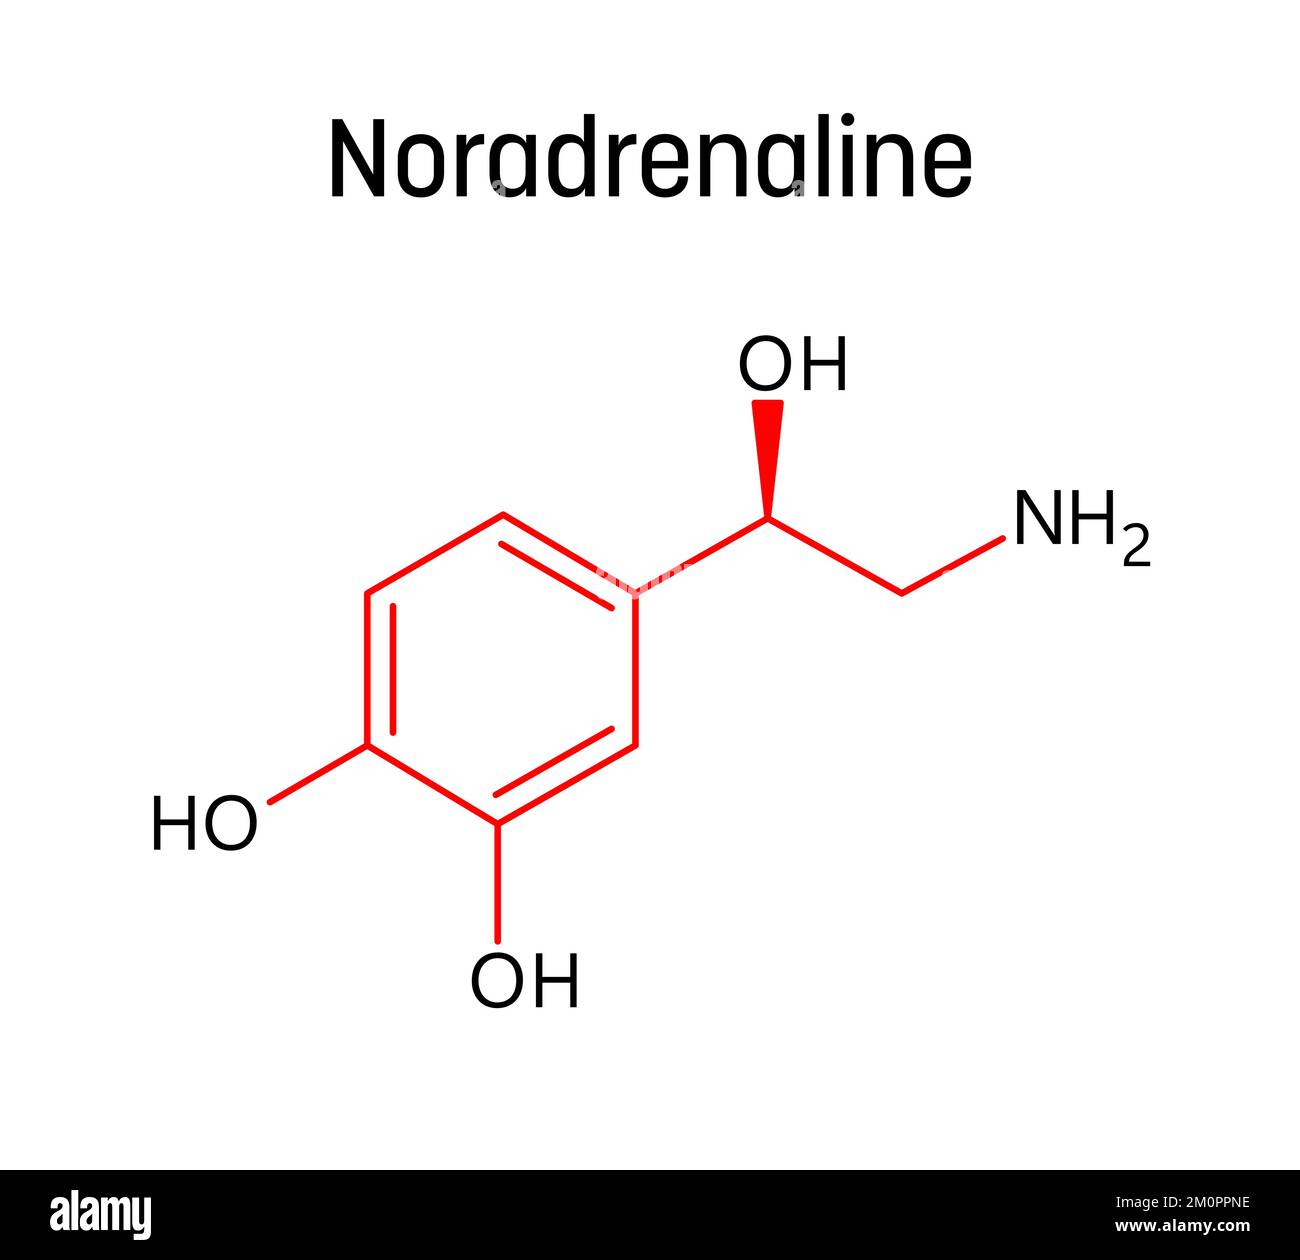 Struttura molecolare della noradrenalina. La noradrenalina, o norepinefrina, è neurotrasmettitore e ormone nel corpo umano. Formula strutturale vettoriale del composto chimico con legami rossi e etichette di atomi neri. Illustrazione Vettoriale